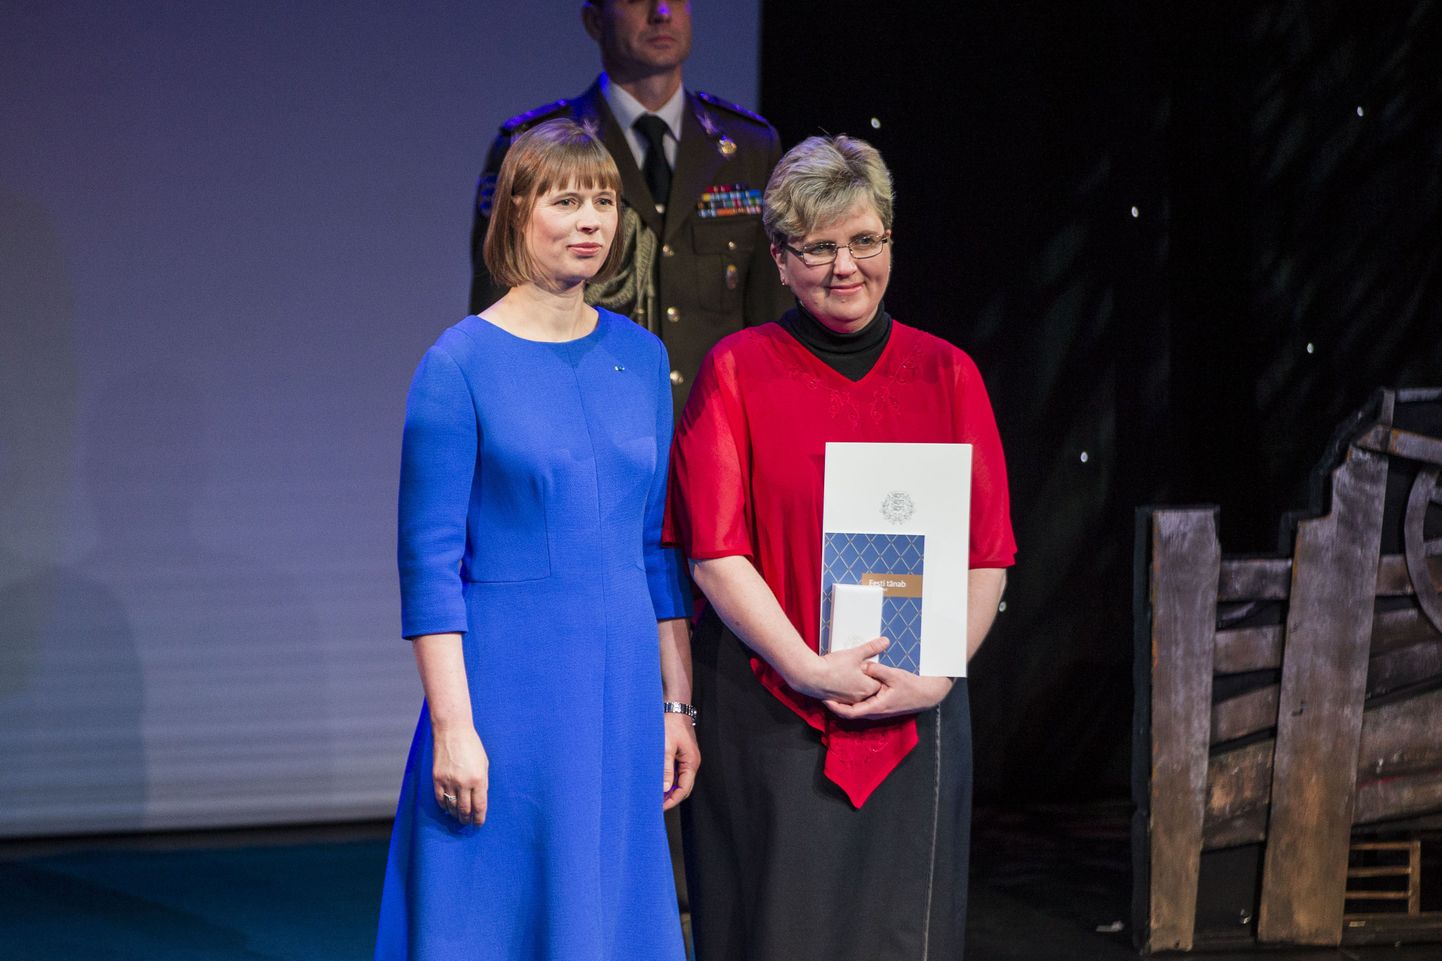 Tänavu sai koguduse õpetaja ja hingehoiu korraldaja Annika Laats kõrge tunnustuse osaliseks, kui president Kersti Kaljulaid andis talle Eesti Punase Risti IV klassi teenetemärgi.